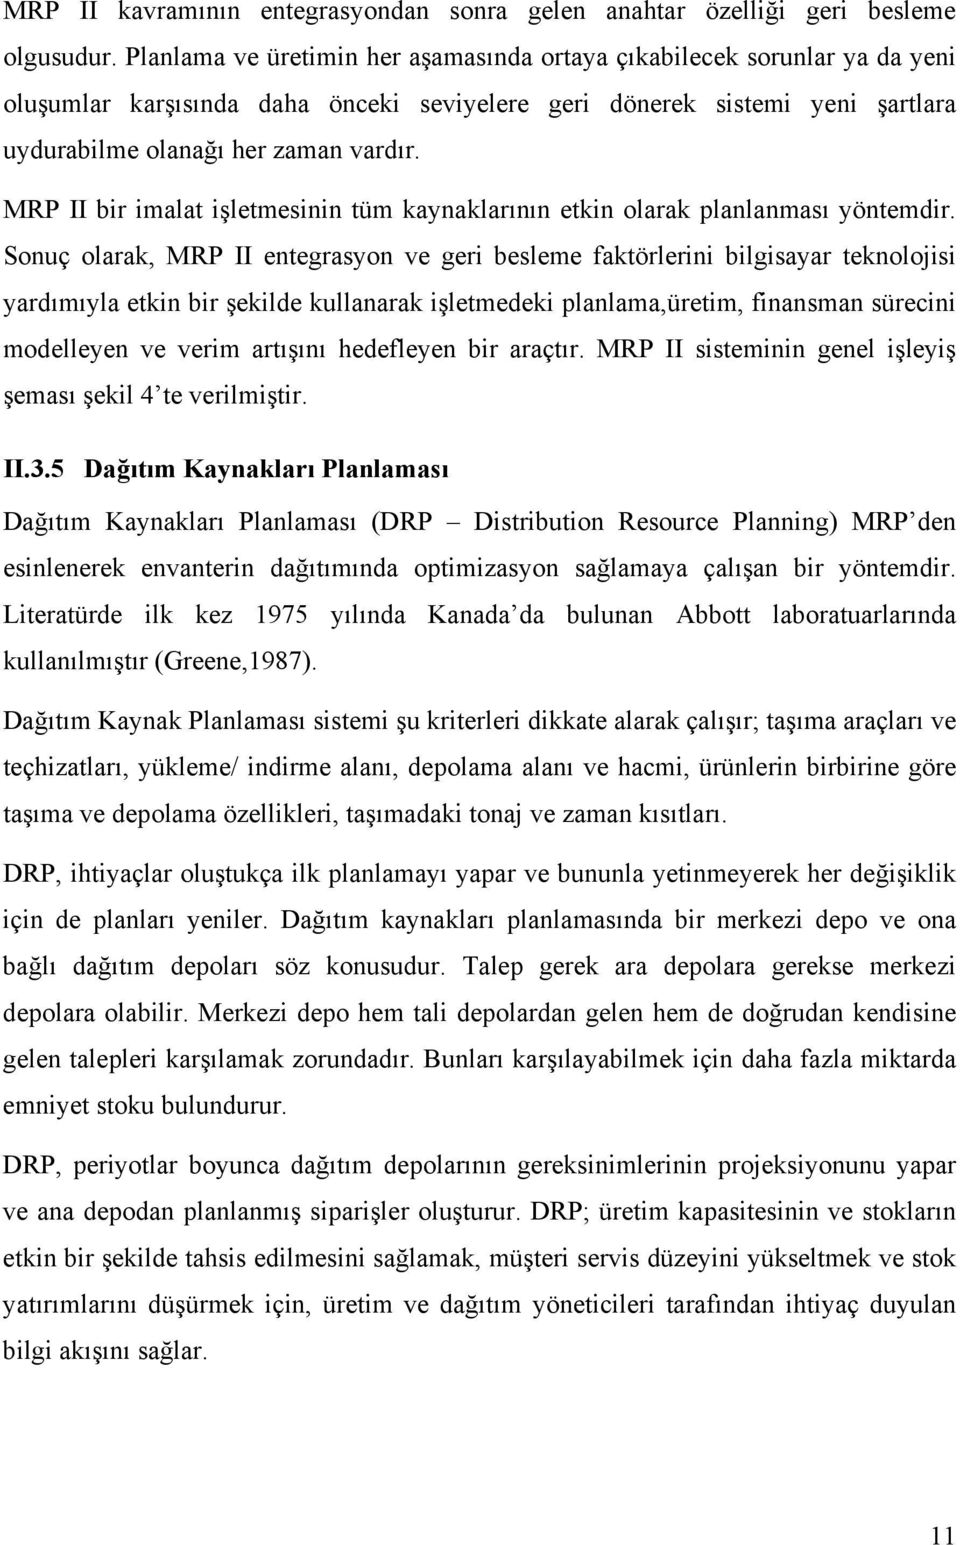 MRP II bir imalat işletmesinin tüm kaynaklarõnõn etkin olarak planlanmasõ yöntemdir.